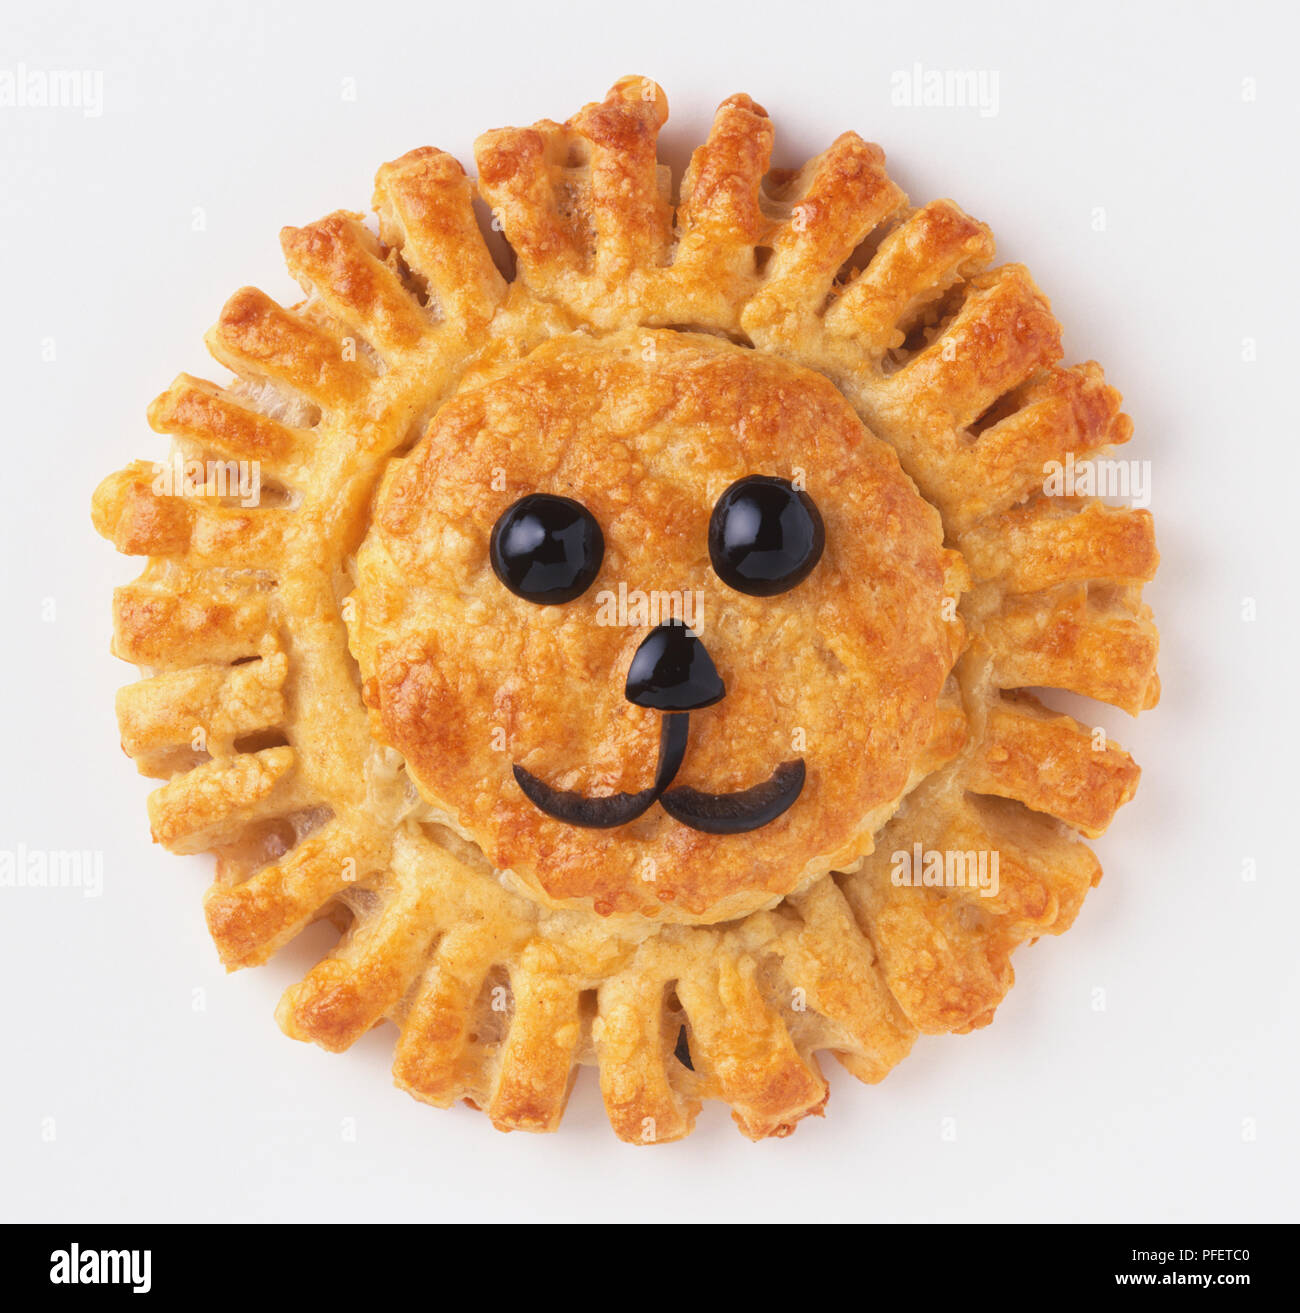 Di forma circolare decorata di pasticceria con olive per assomigliare ad un leone la faccia a vista da sopra. Foto Stock